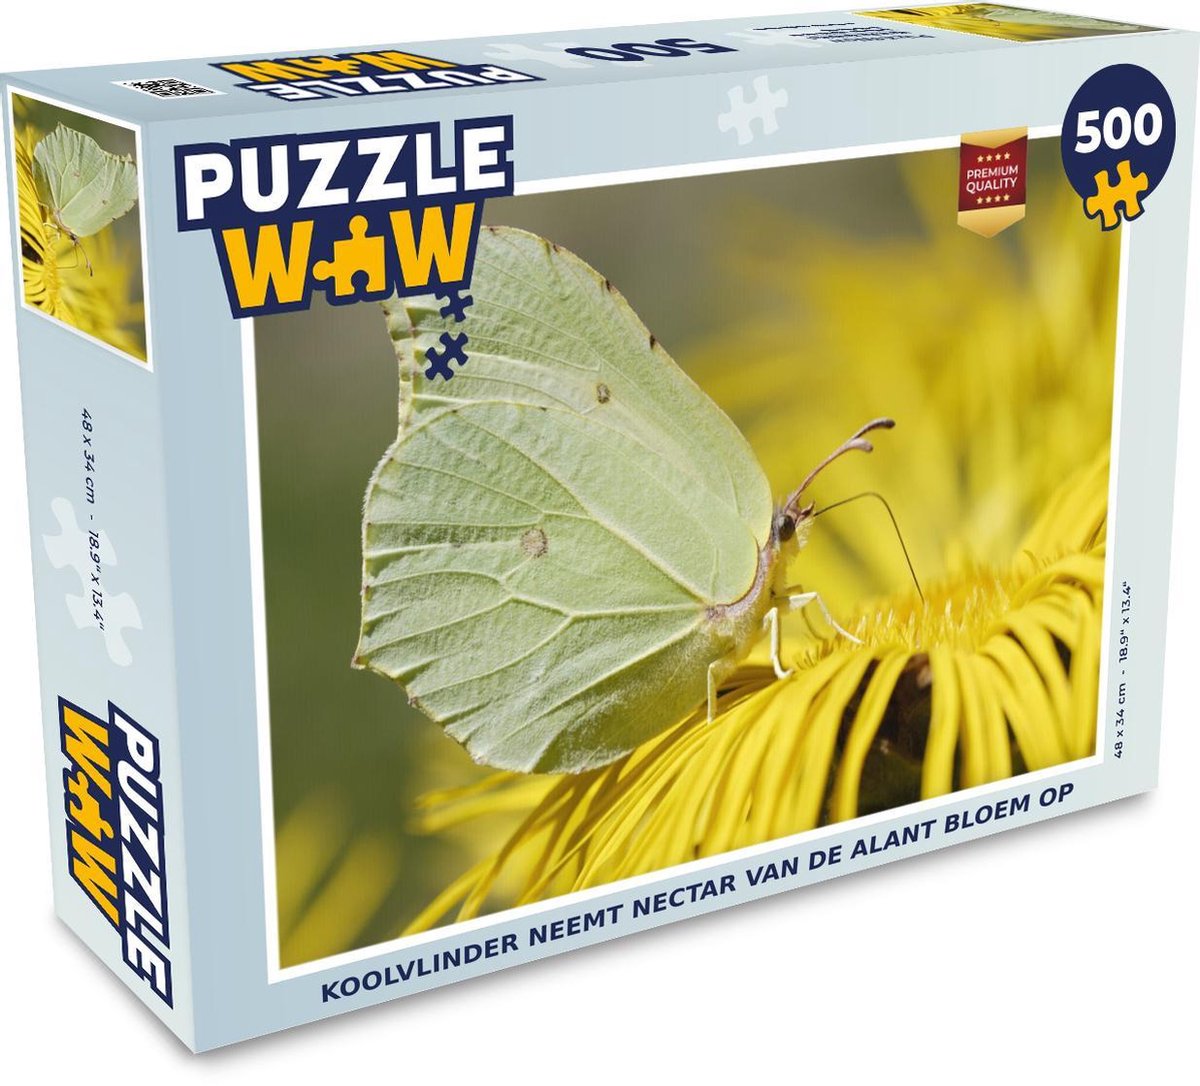 Afbeelding van product Puzzel 500 stukjes Alant - Koolvlinder neemt nectar van de Alant bloem op - PuzzleWow heeft +100000 puzzels